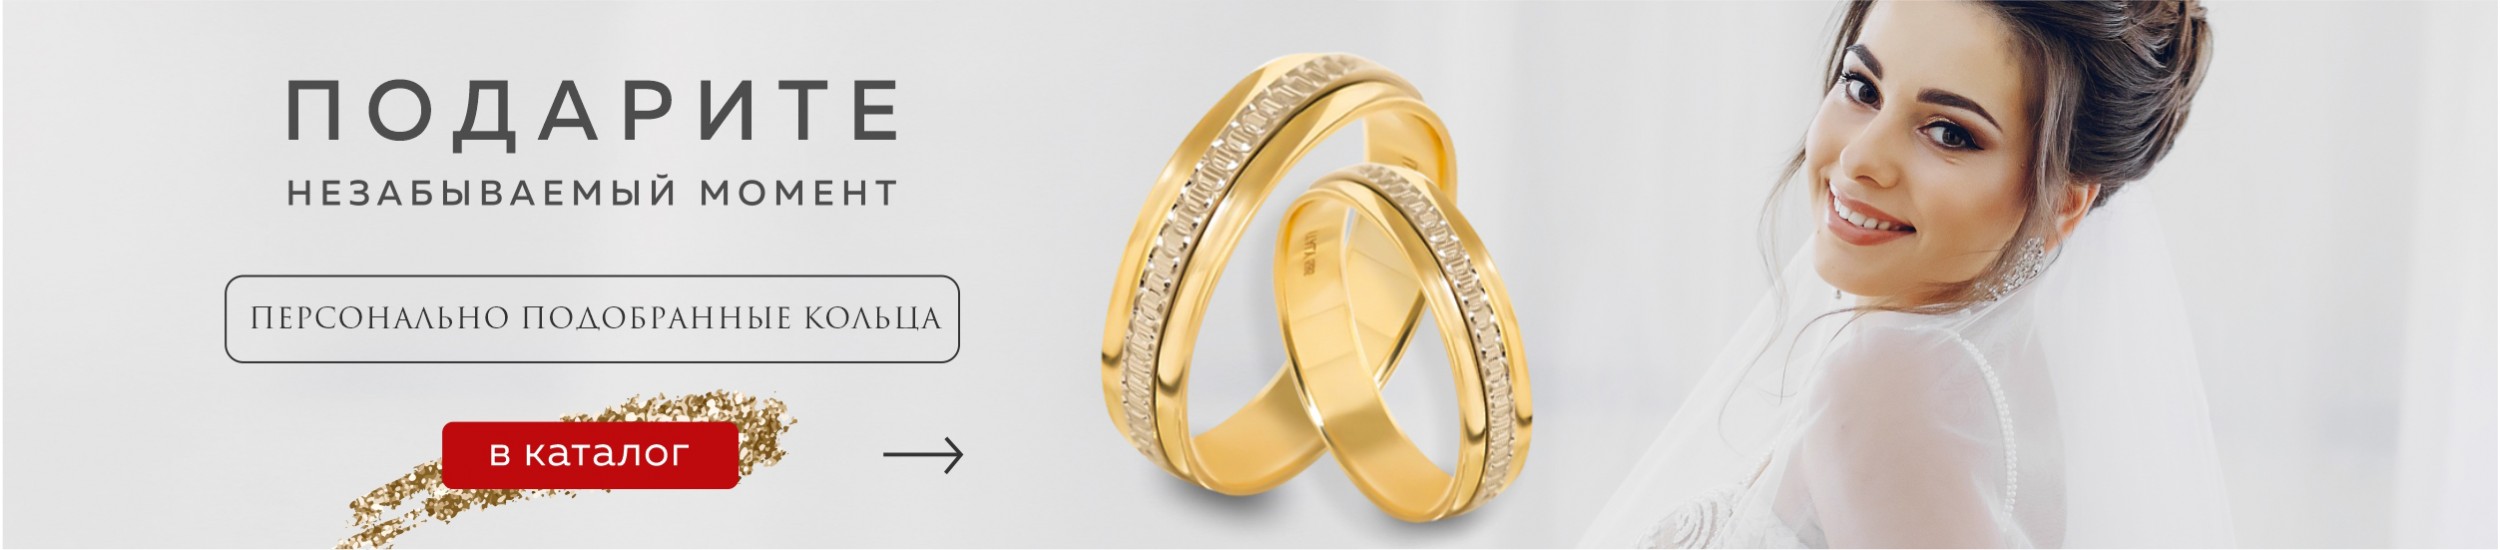 Обручальные кольца в интернет магазине Diamant.uz